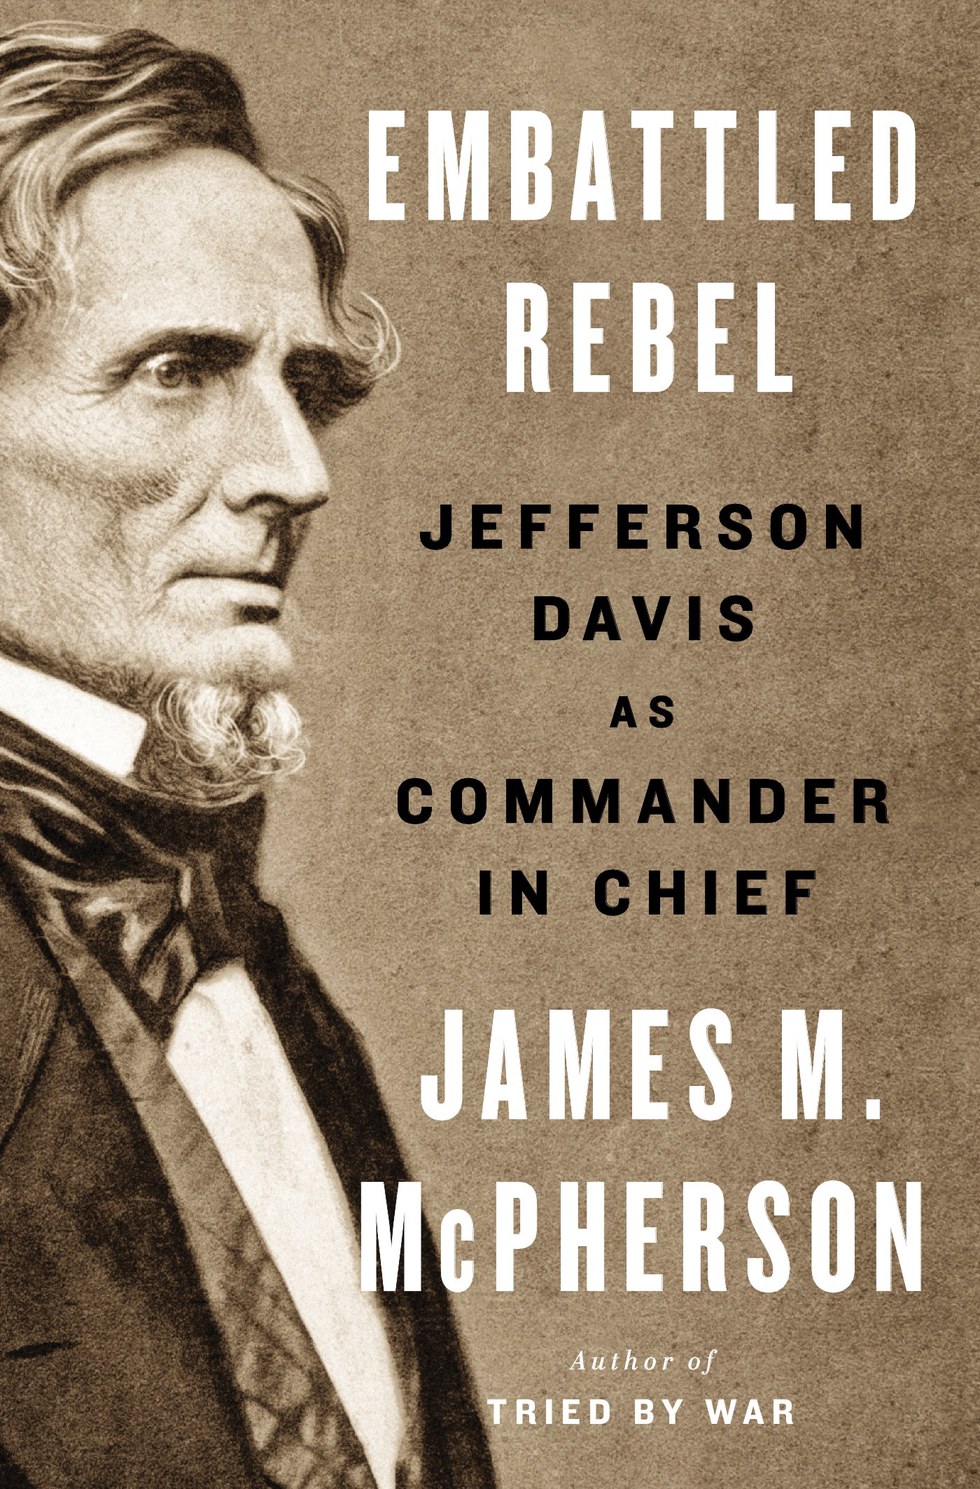 mcpherson civil war book